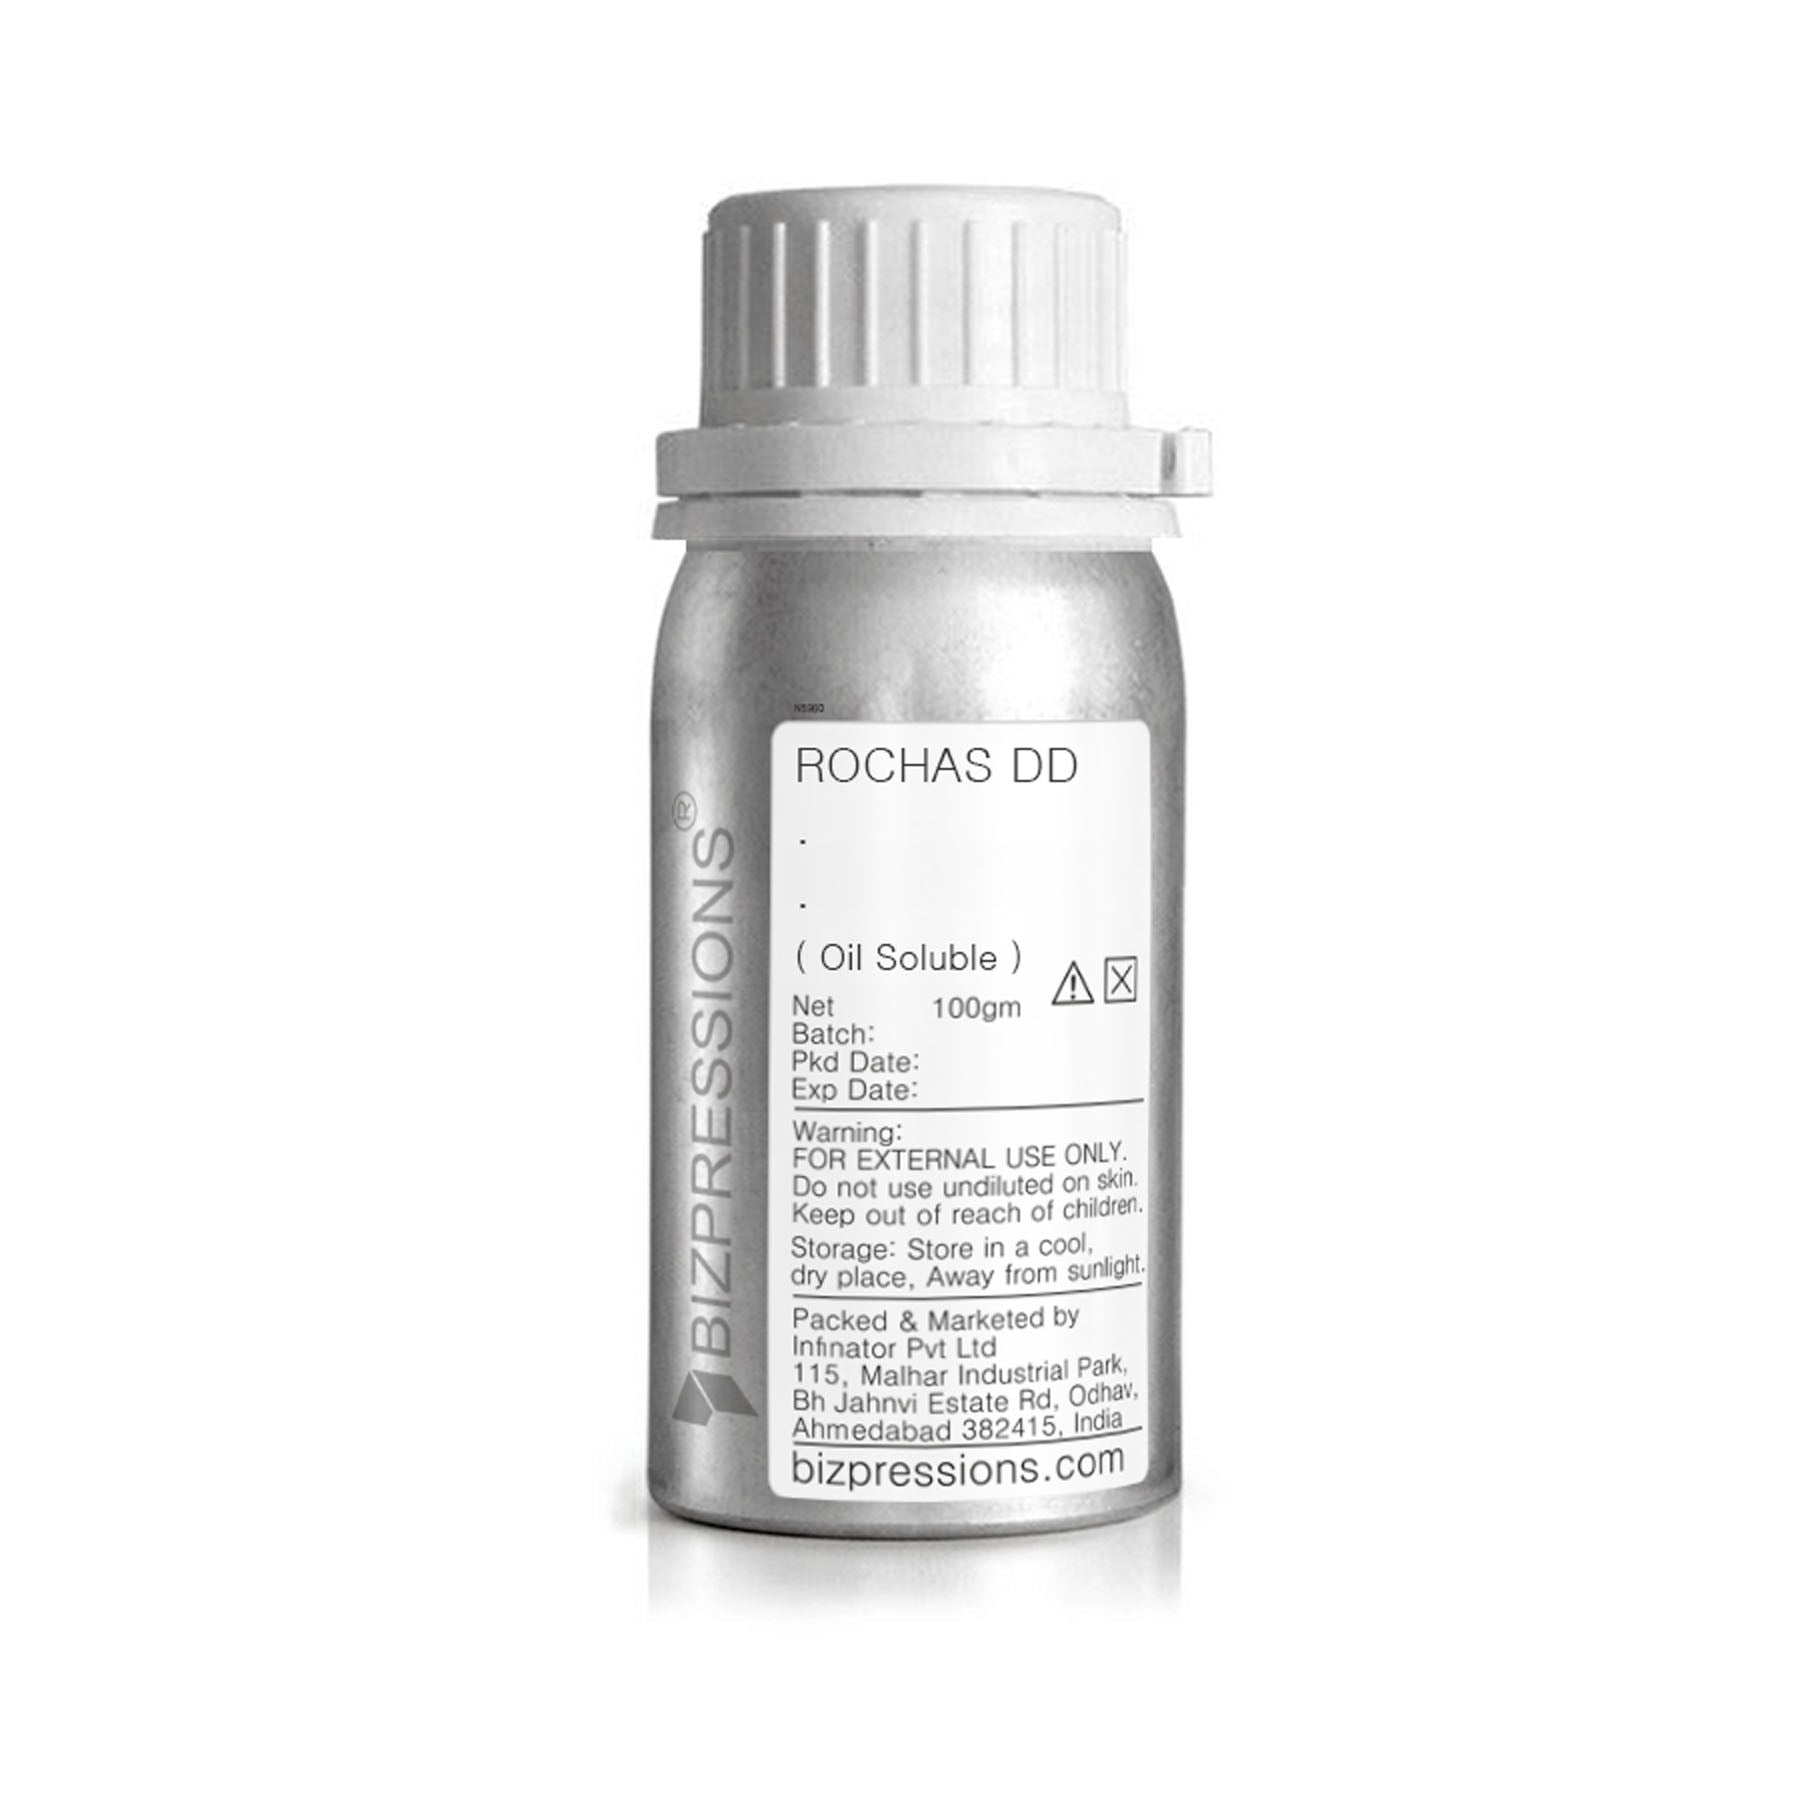 ROCHAS DD - Fragrance ( Oil Soluble ) - 100 gm